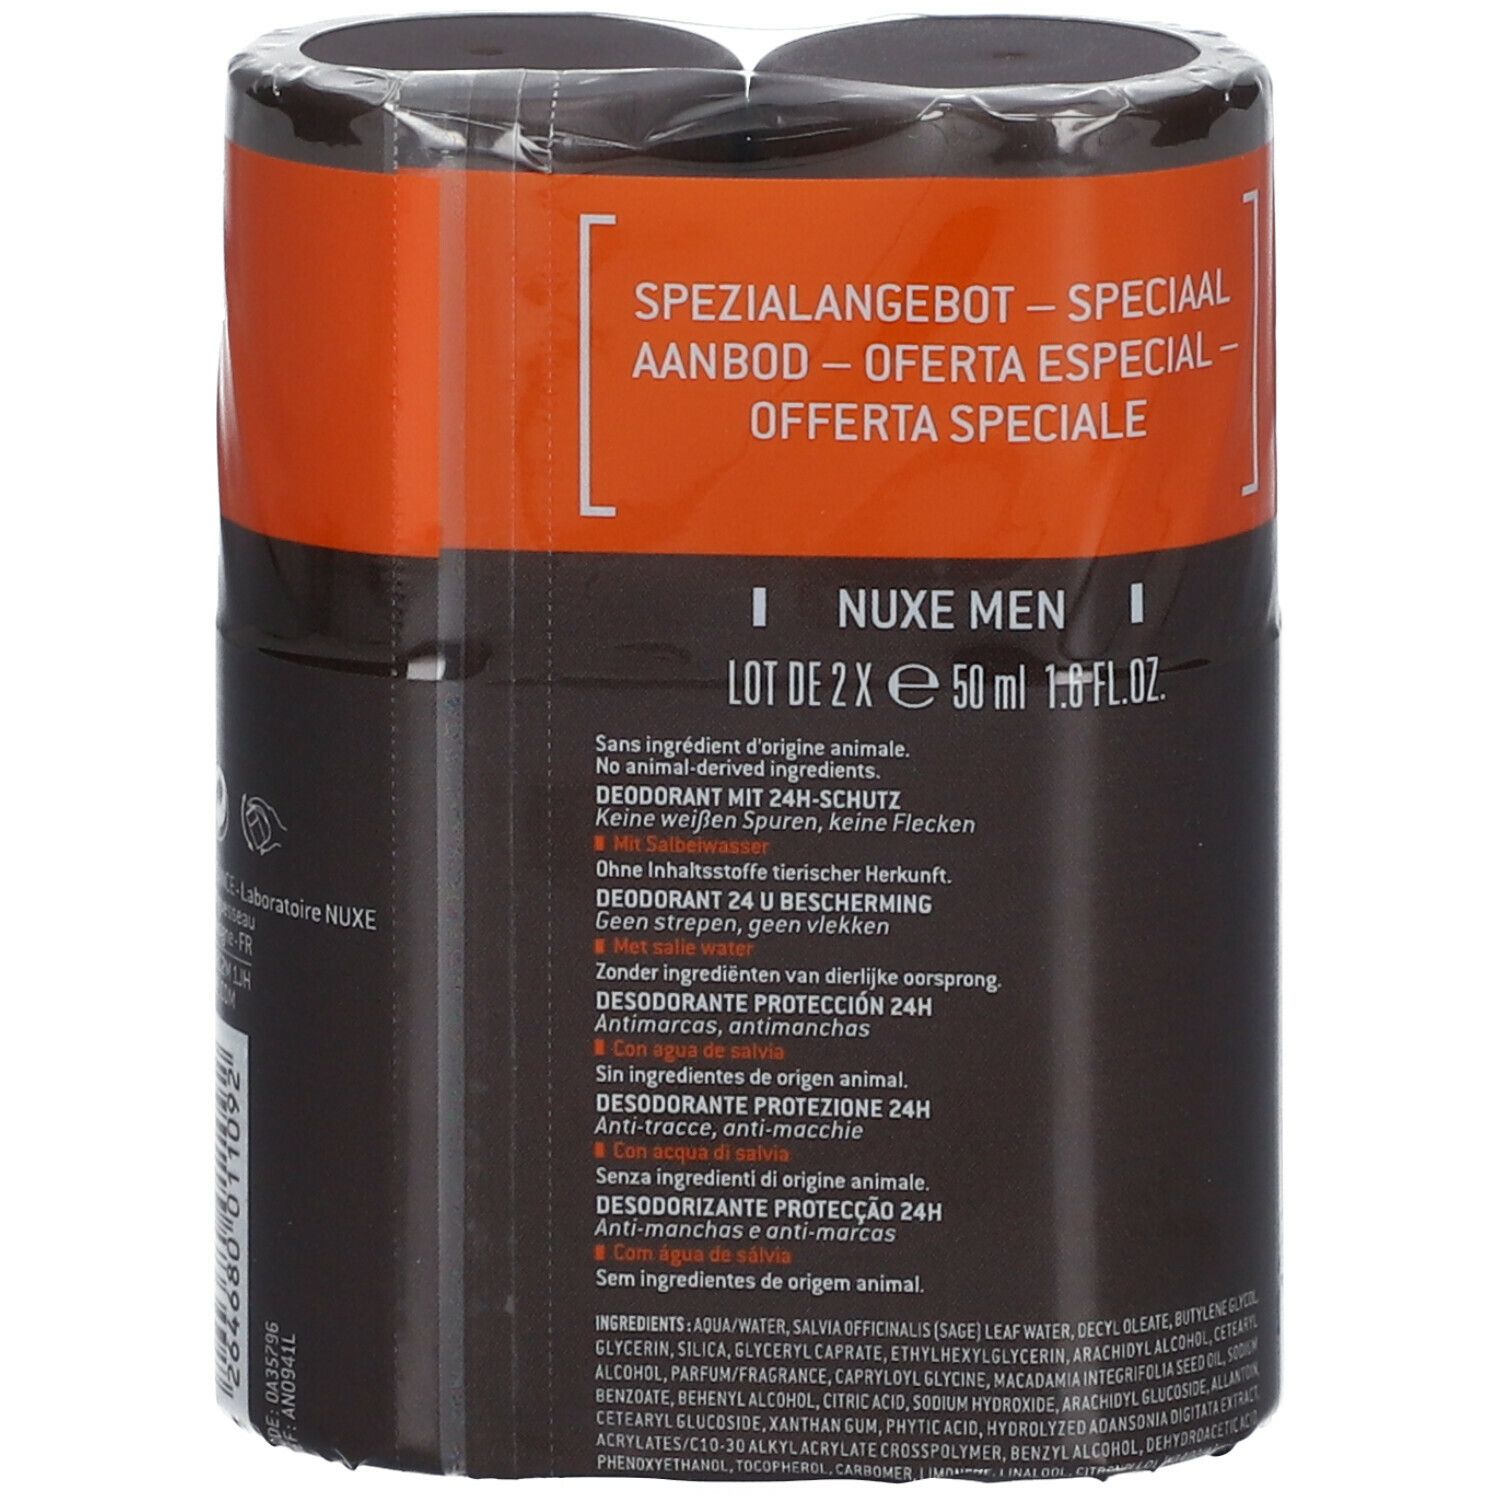 NUXE Men aluminiumfreies Deodorant mit 24H Schutz gegen Schweiß und Körpergeruch Doppelpack